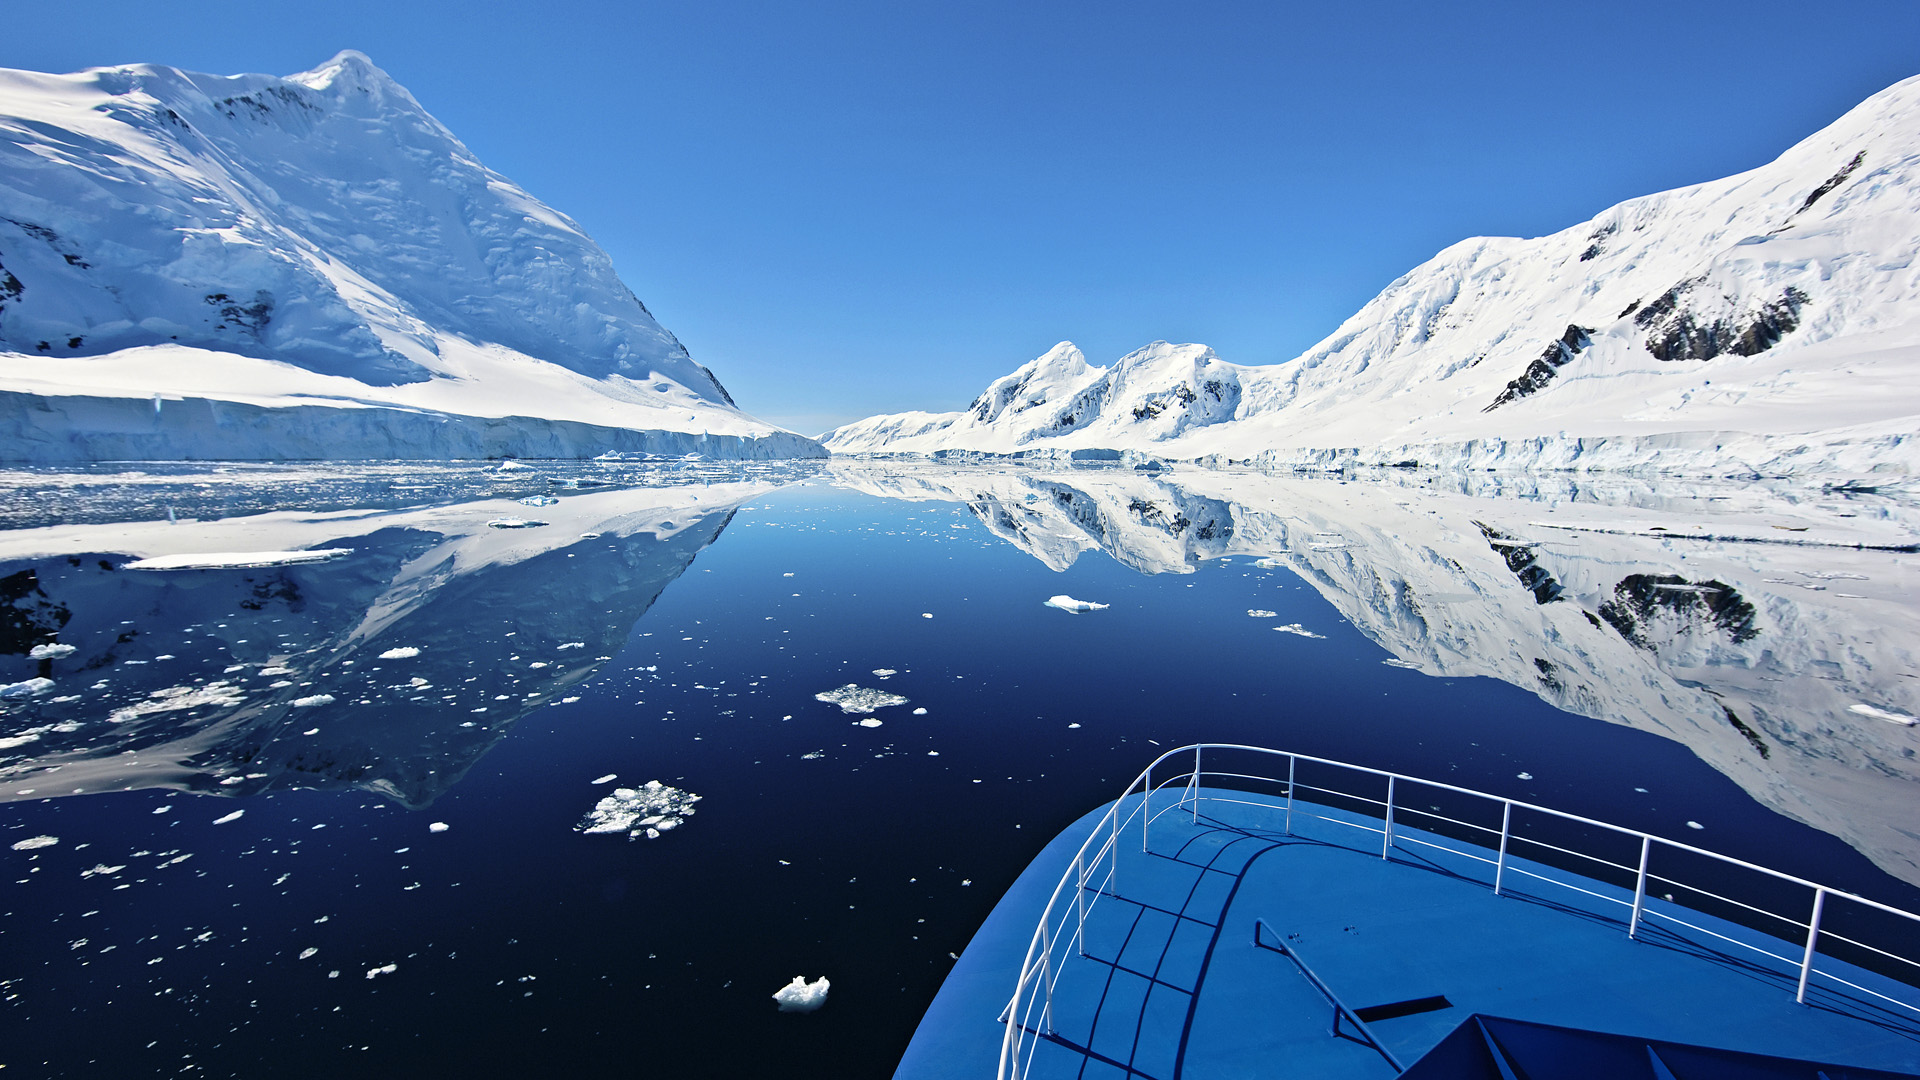 antarctica, photography, reflection, boat, mountain, ocean